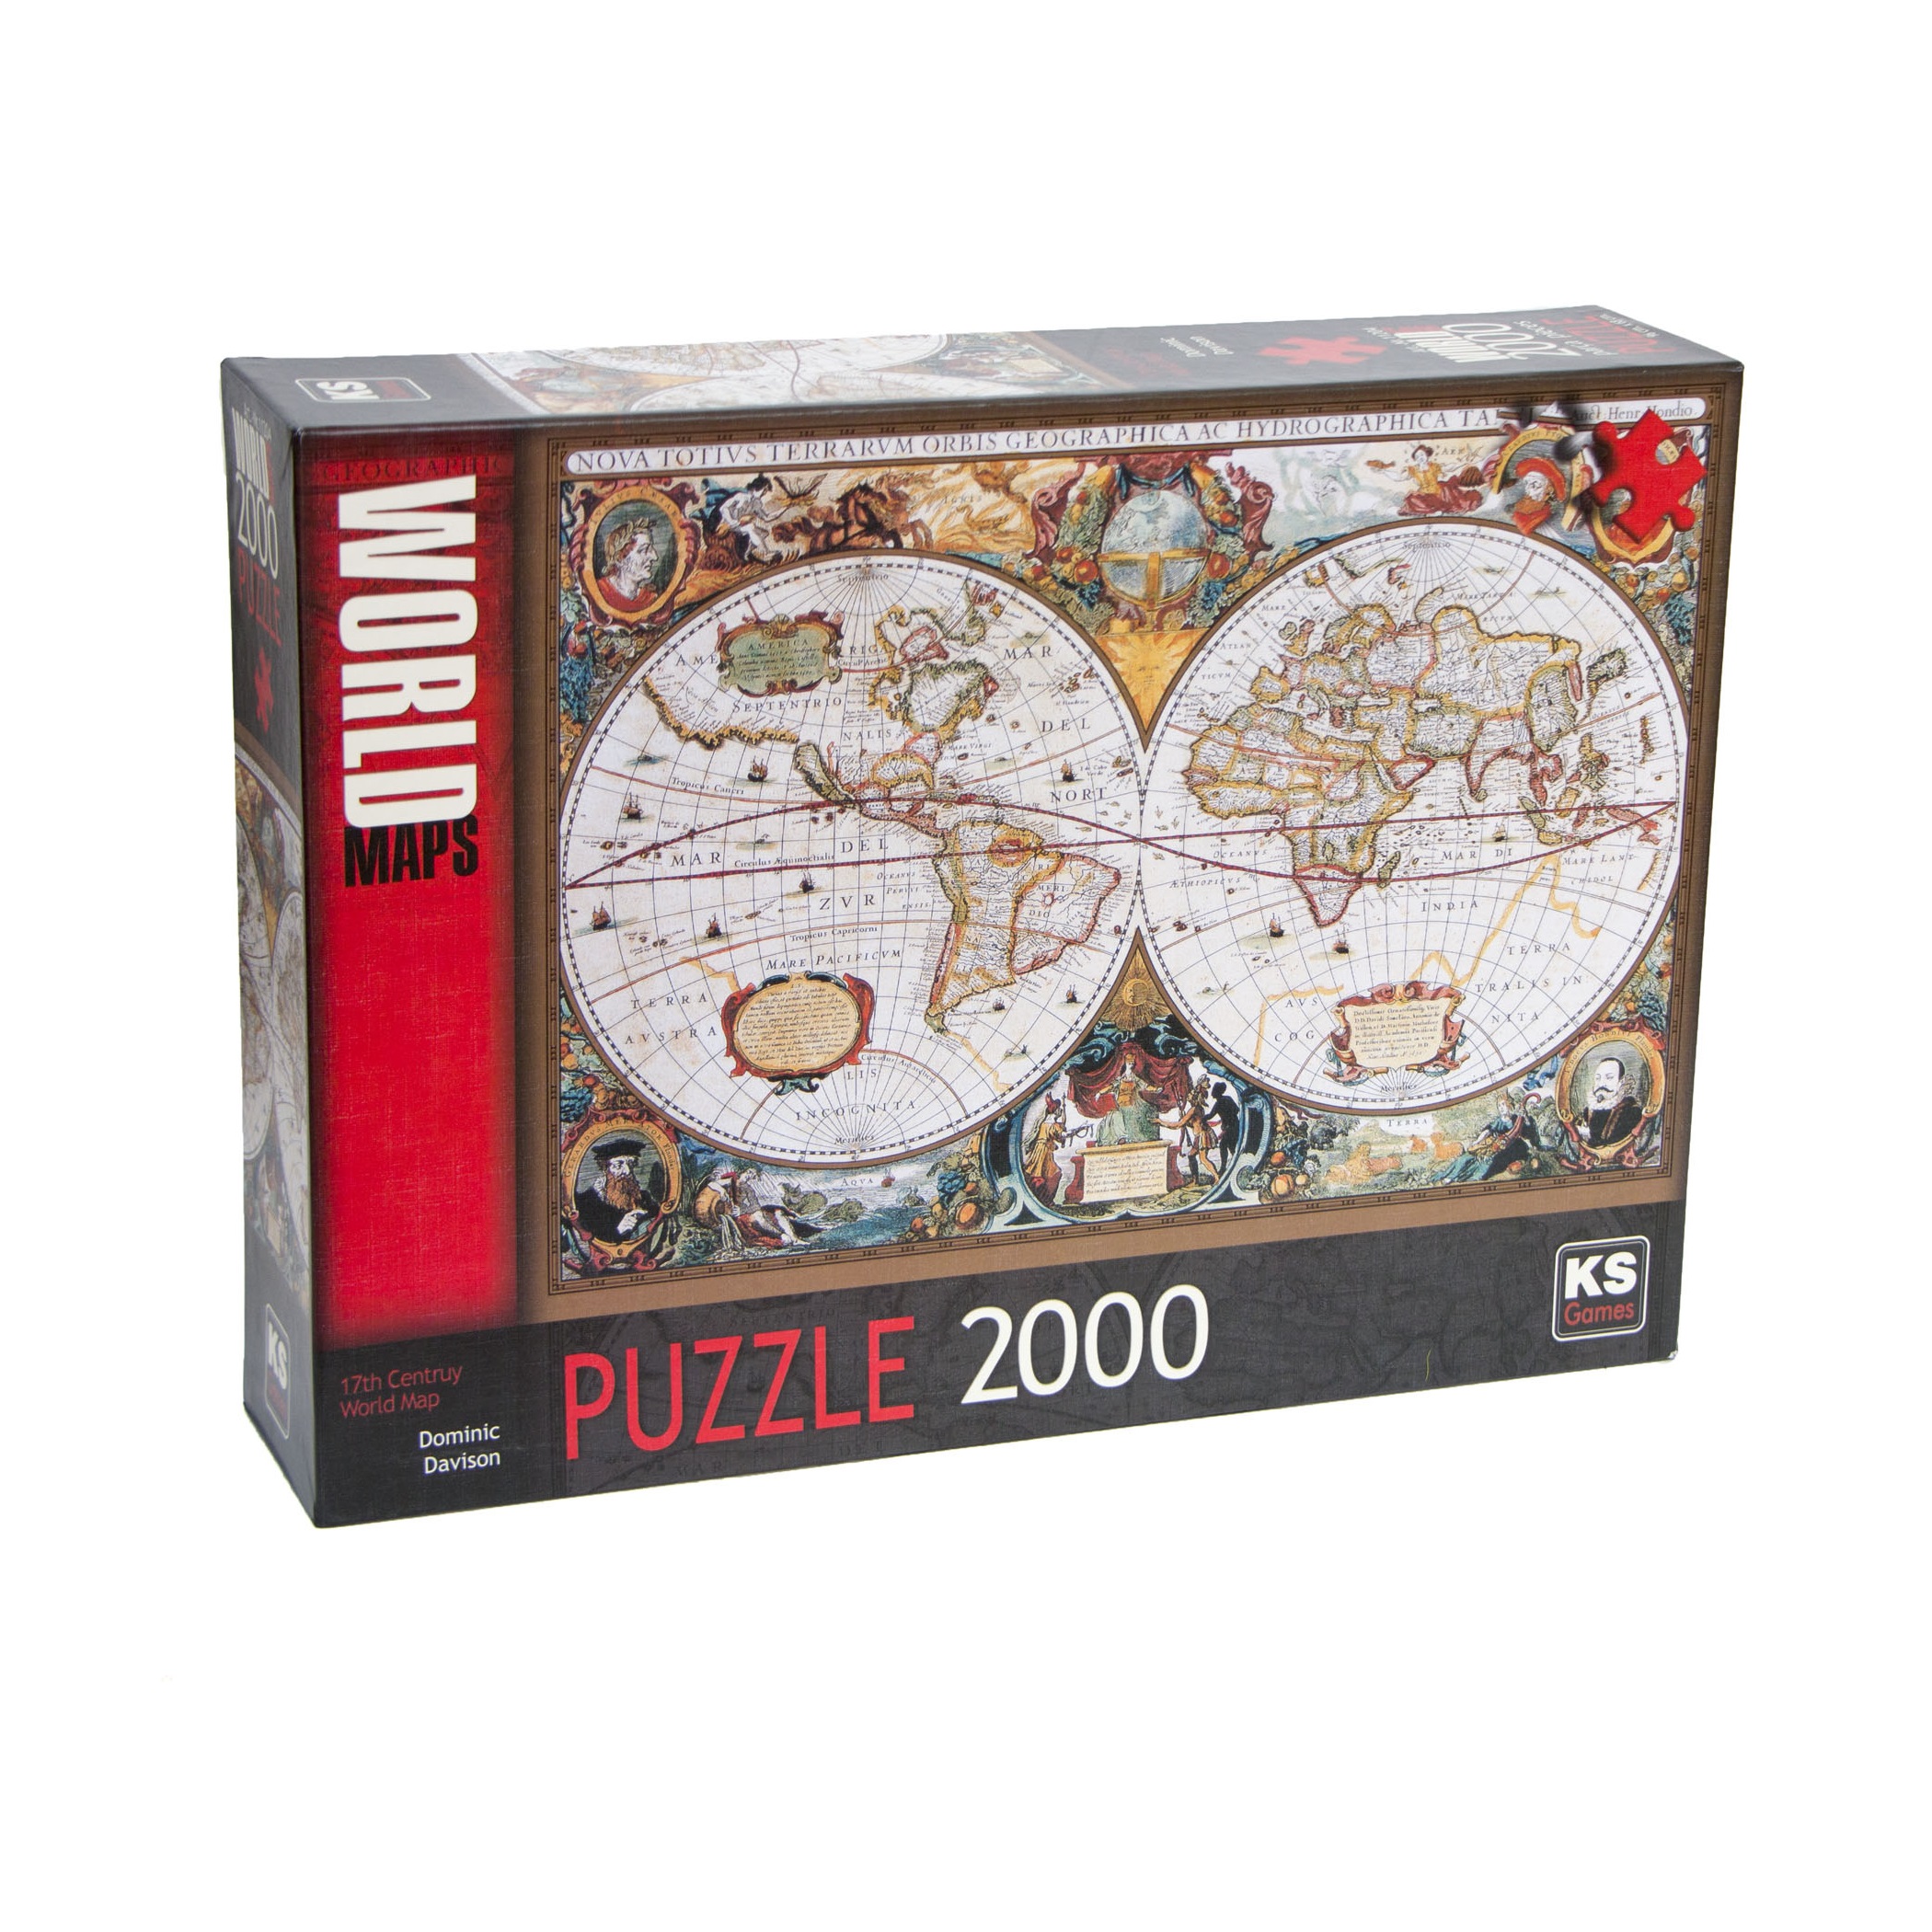 پازل 2000 تکه کا اس گیمز طرح نقشه قدیمی جهان کد 11204